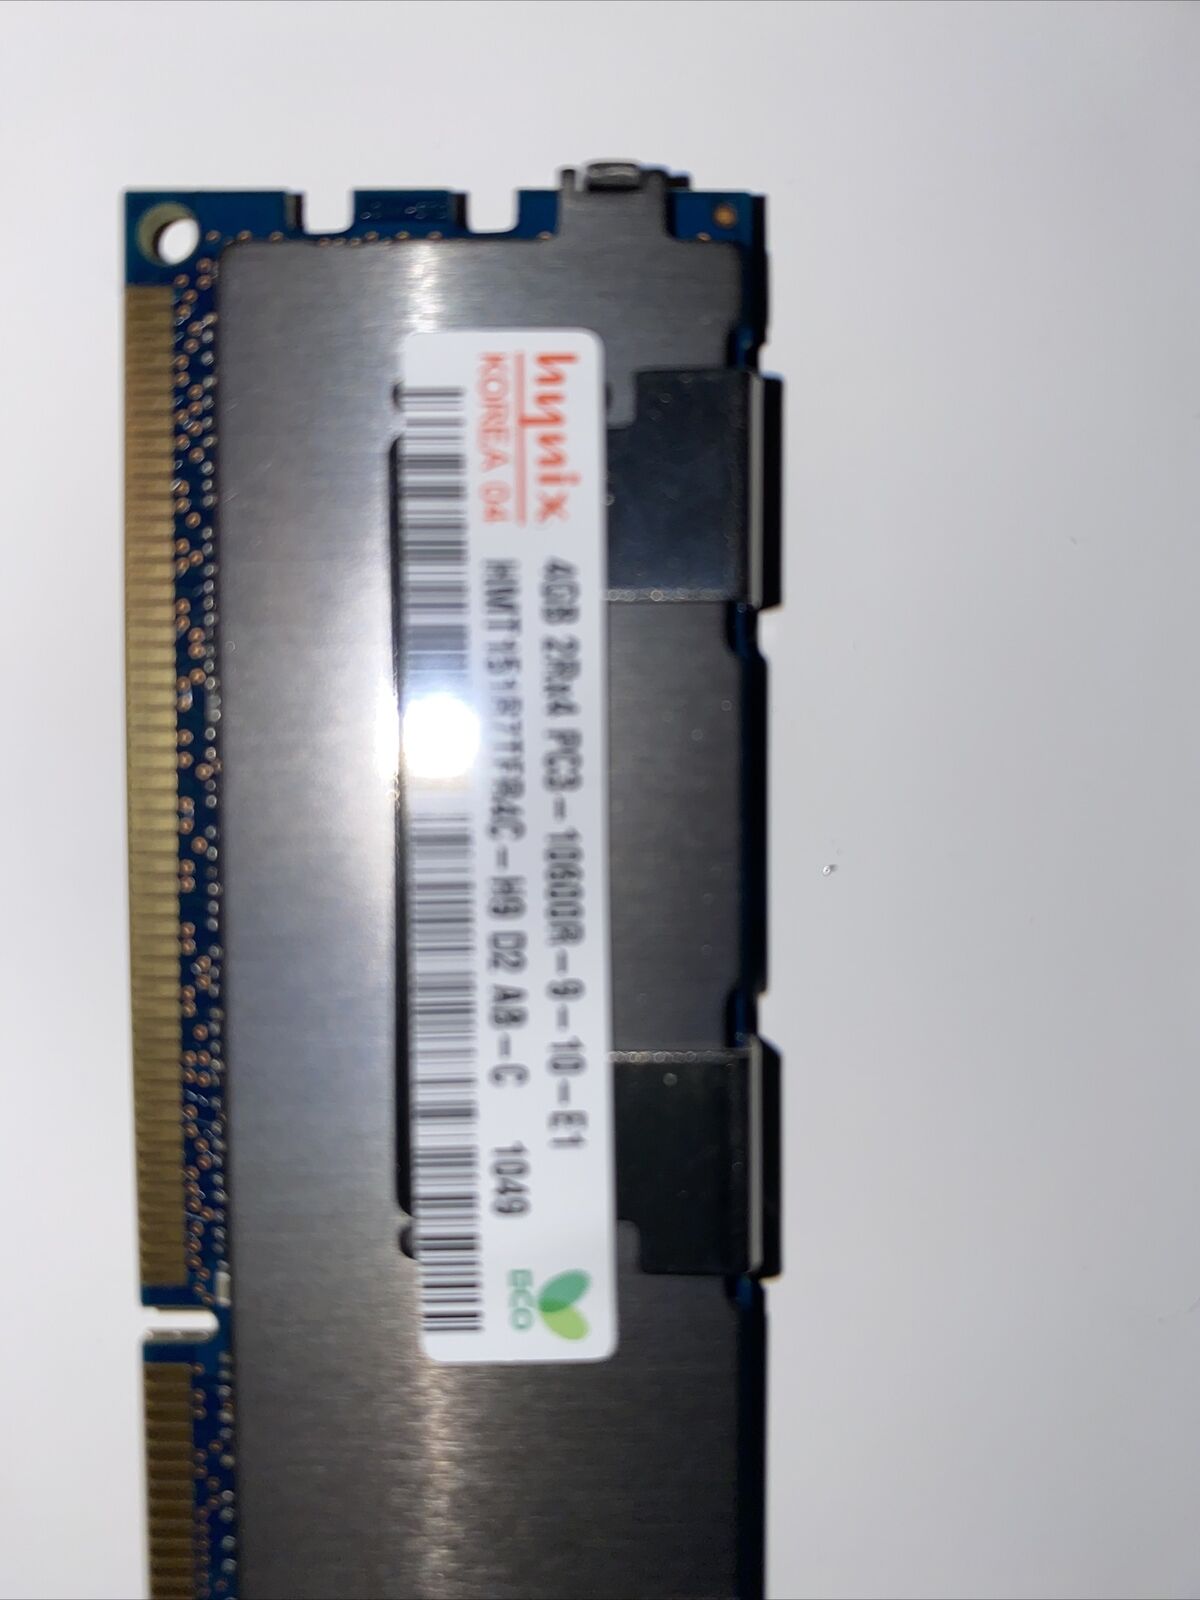 48GB (12X4GB) PC3-10600R FOR DELL POWEREDGE M610 M610x M710 REG DDR3 MEMORY